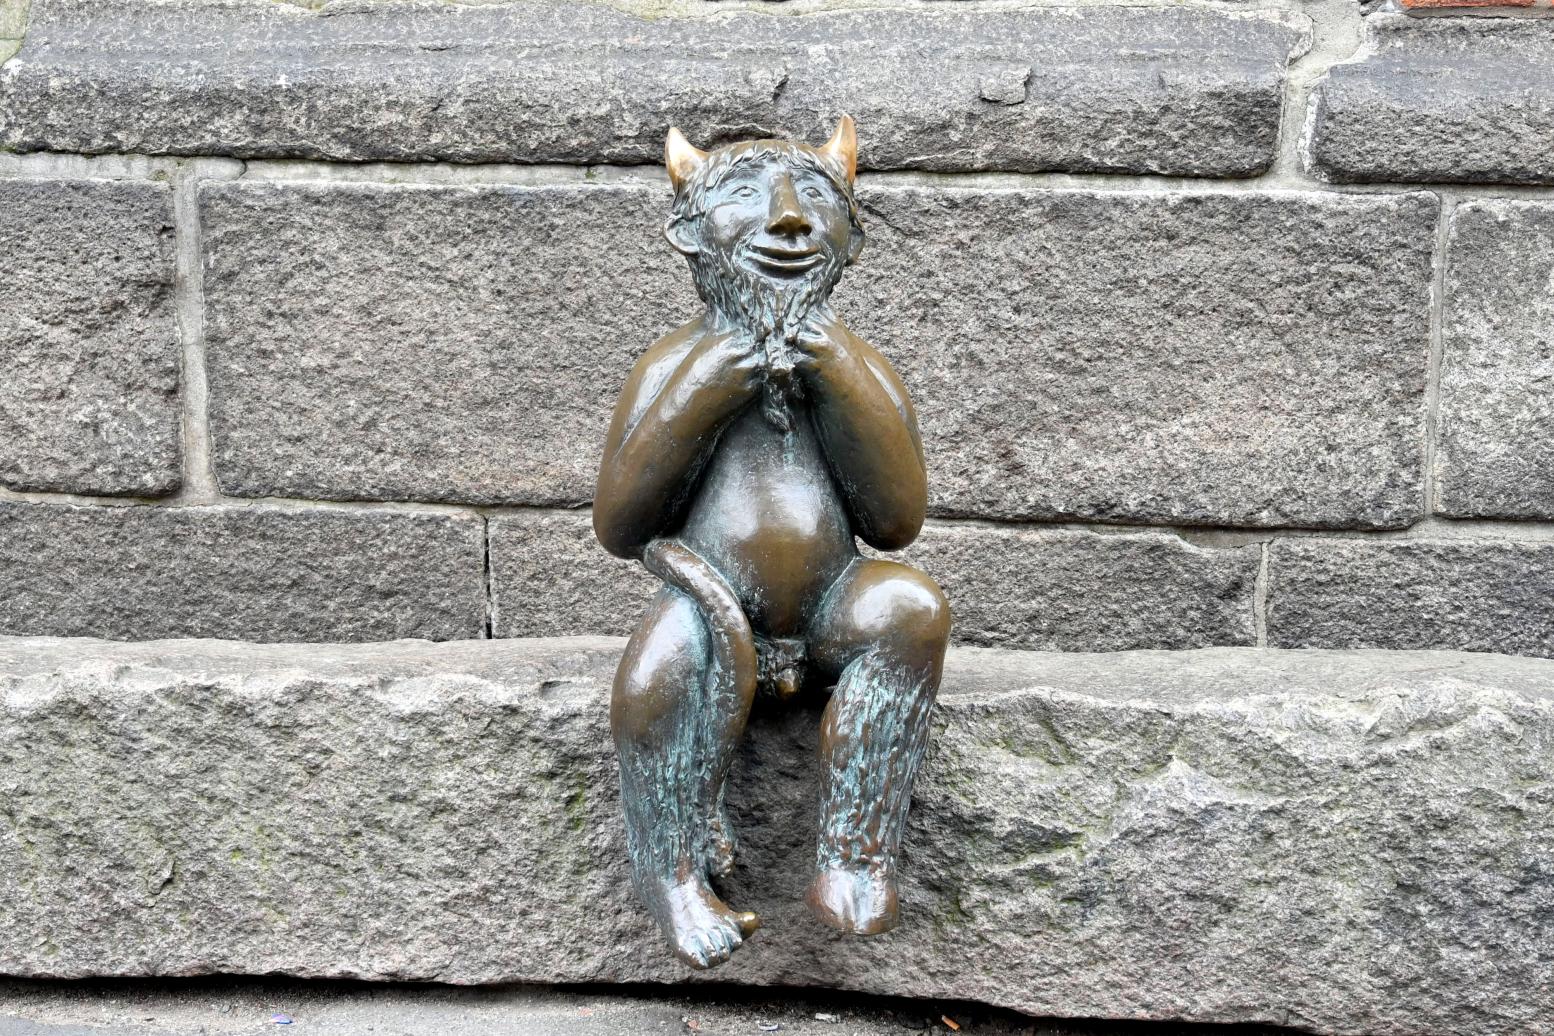 Rolf Goerler (1999), Teufels-Figur, Lübeck, Marienkirche, 1999